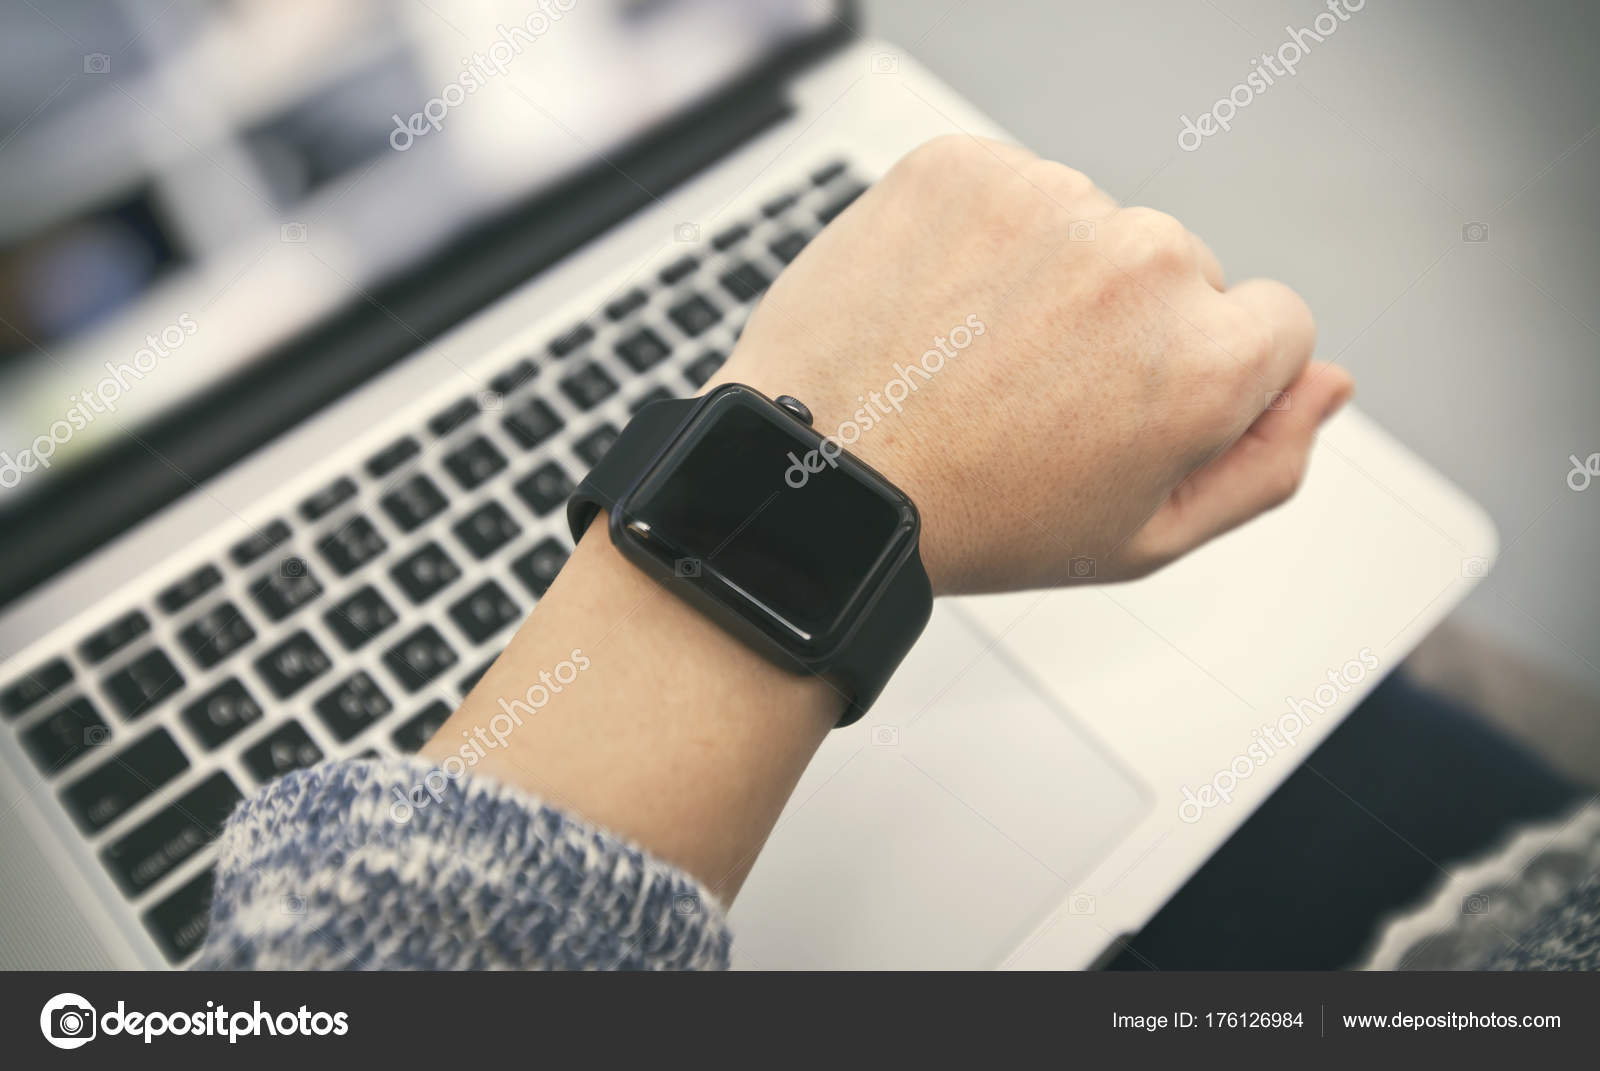 bit Konsekvenser væsentligt Smartwatch on female hand Stock Photo by ©Olegkalina 176126984